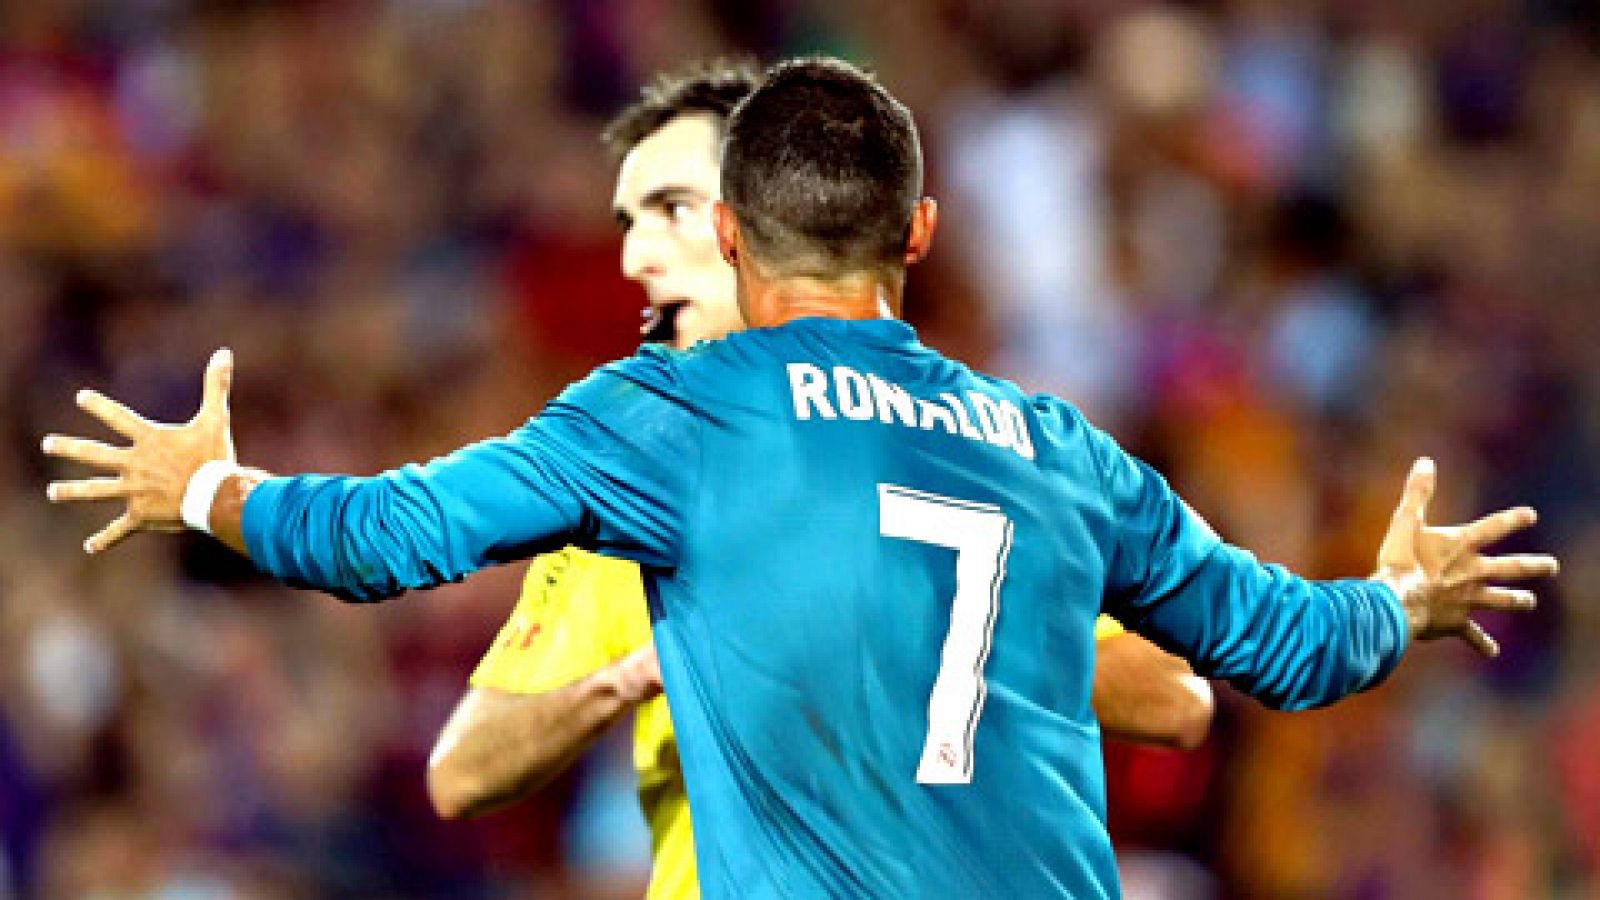 Fútbol | Supercopa de España | Cristiano Ronaldo, sancionado con cinco partidos de suspensión RTVE.es